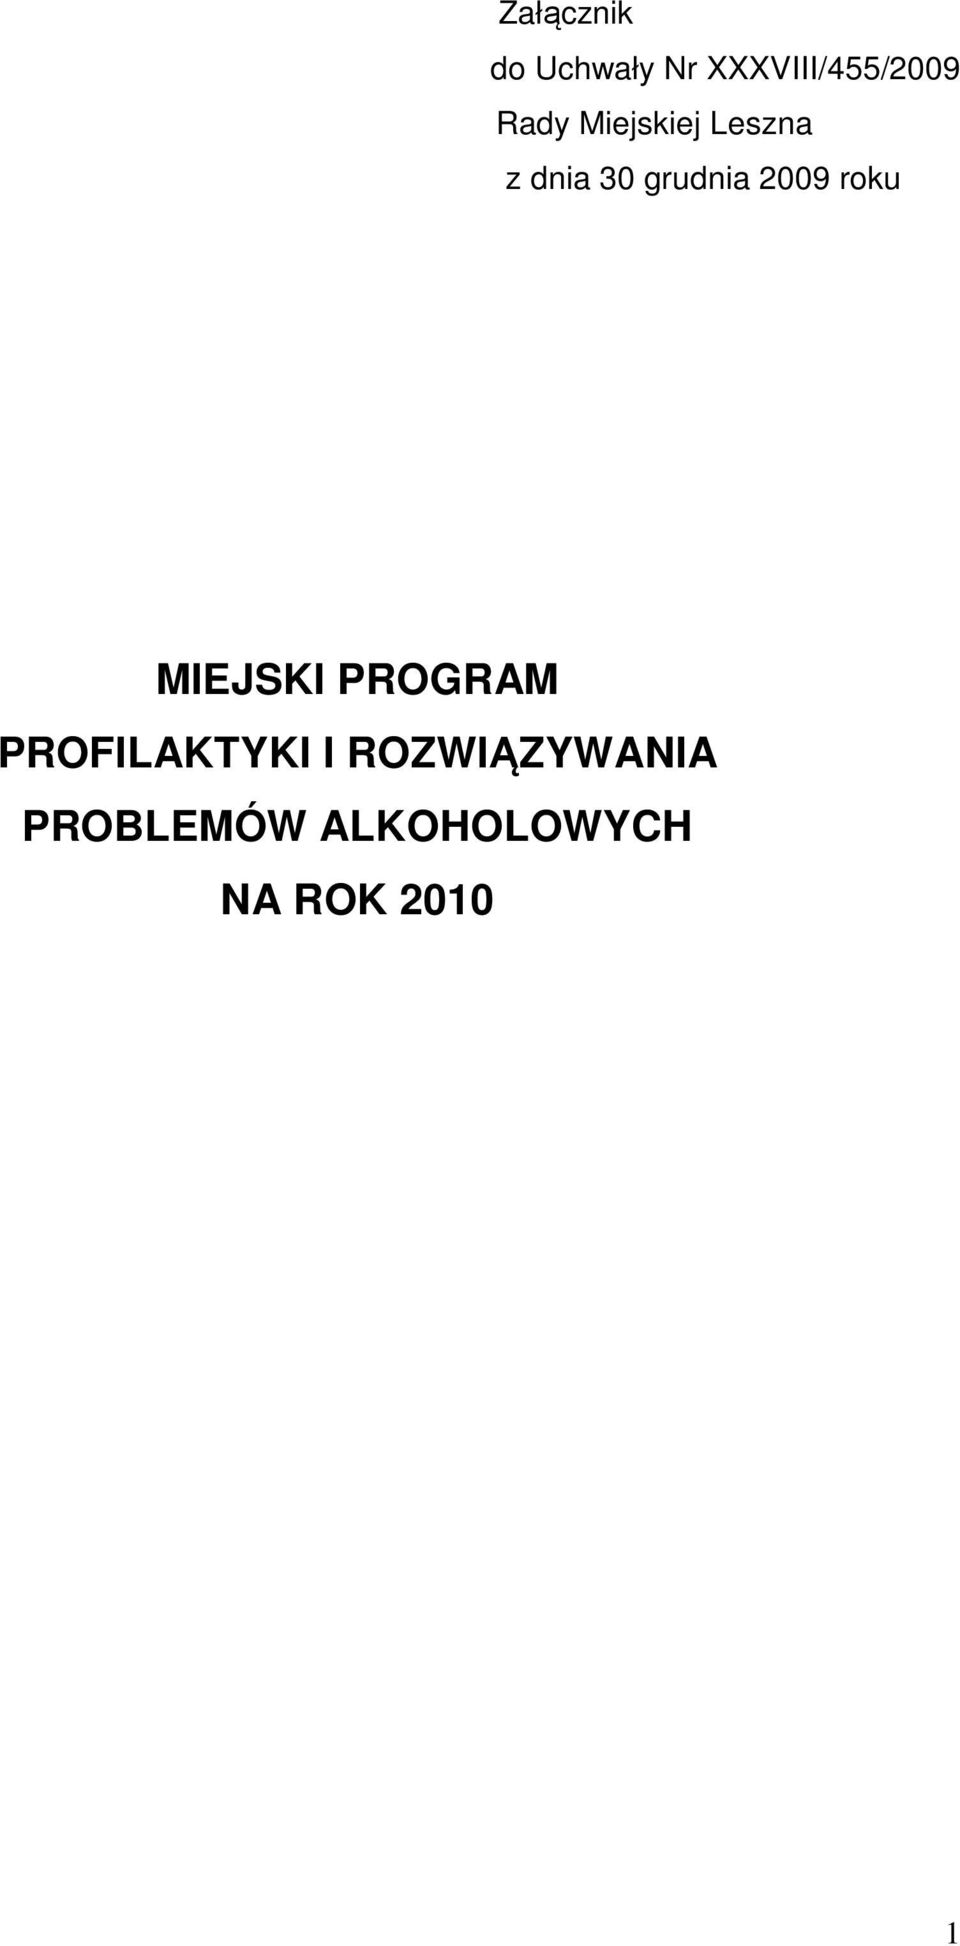 2009 roku MIEJSKI PROGRAM PROFILAKTYKI I